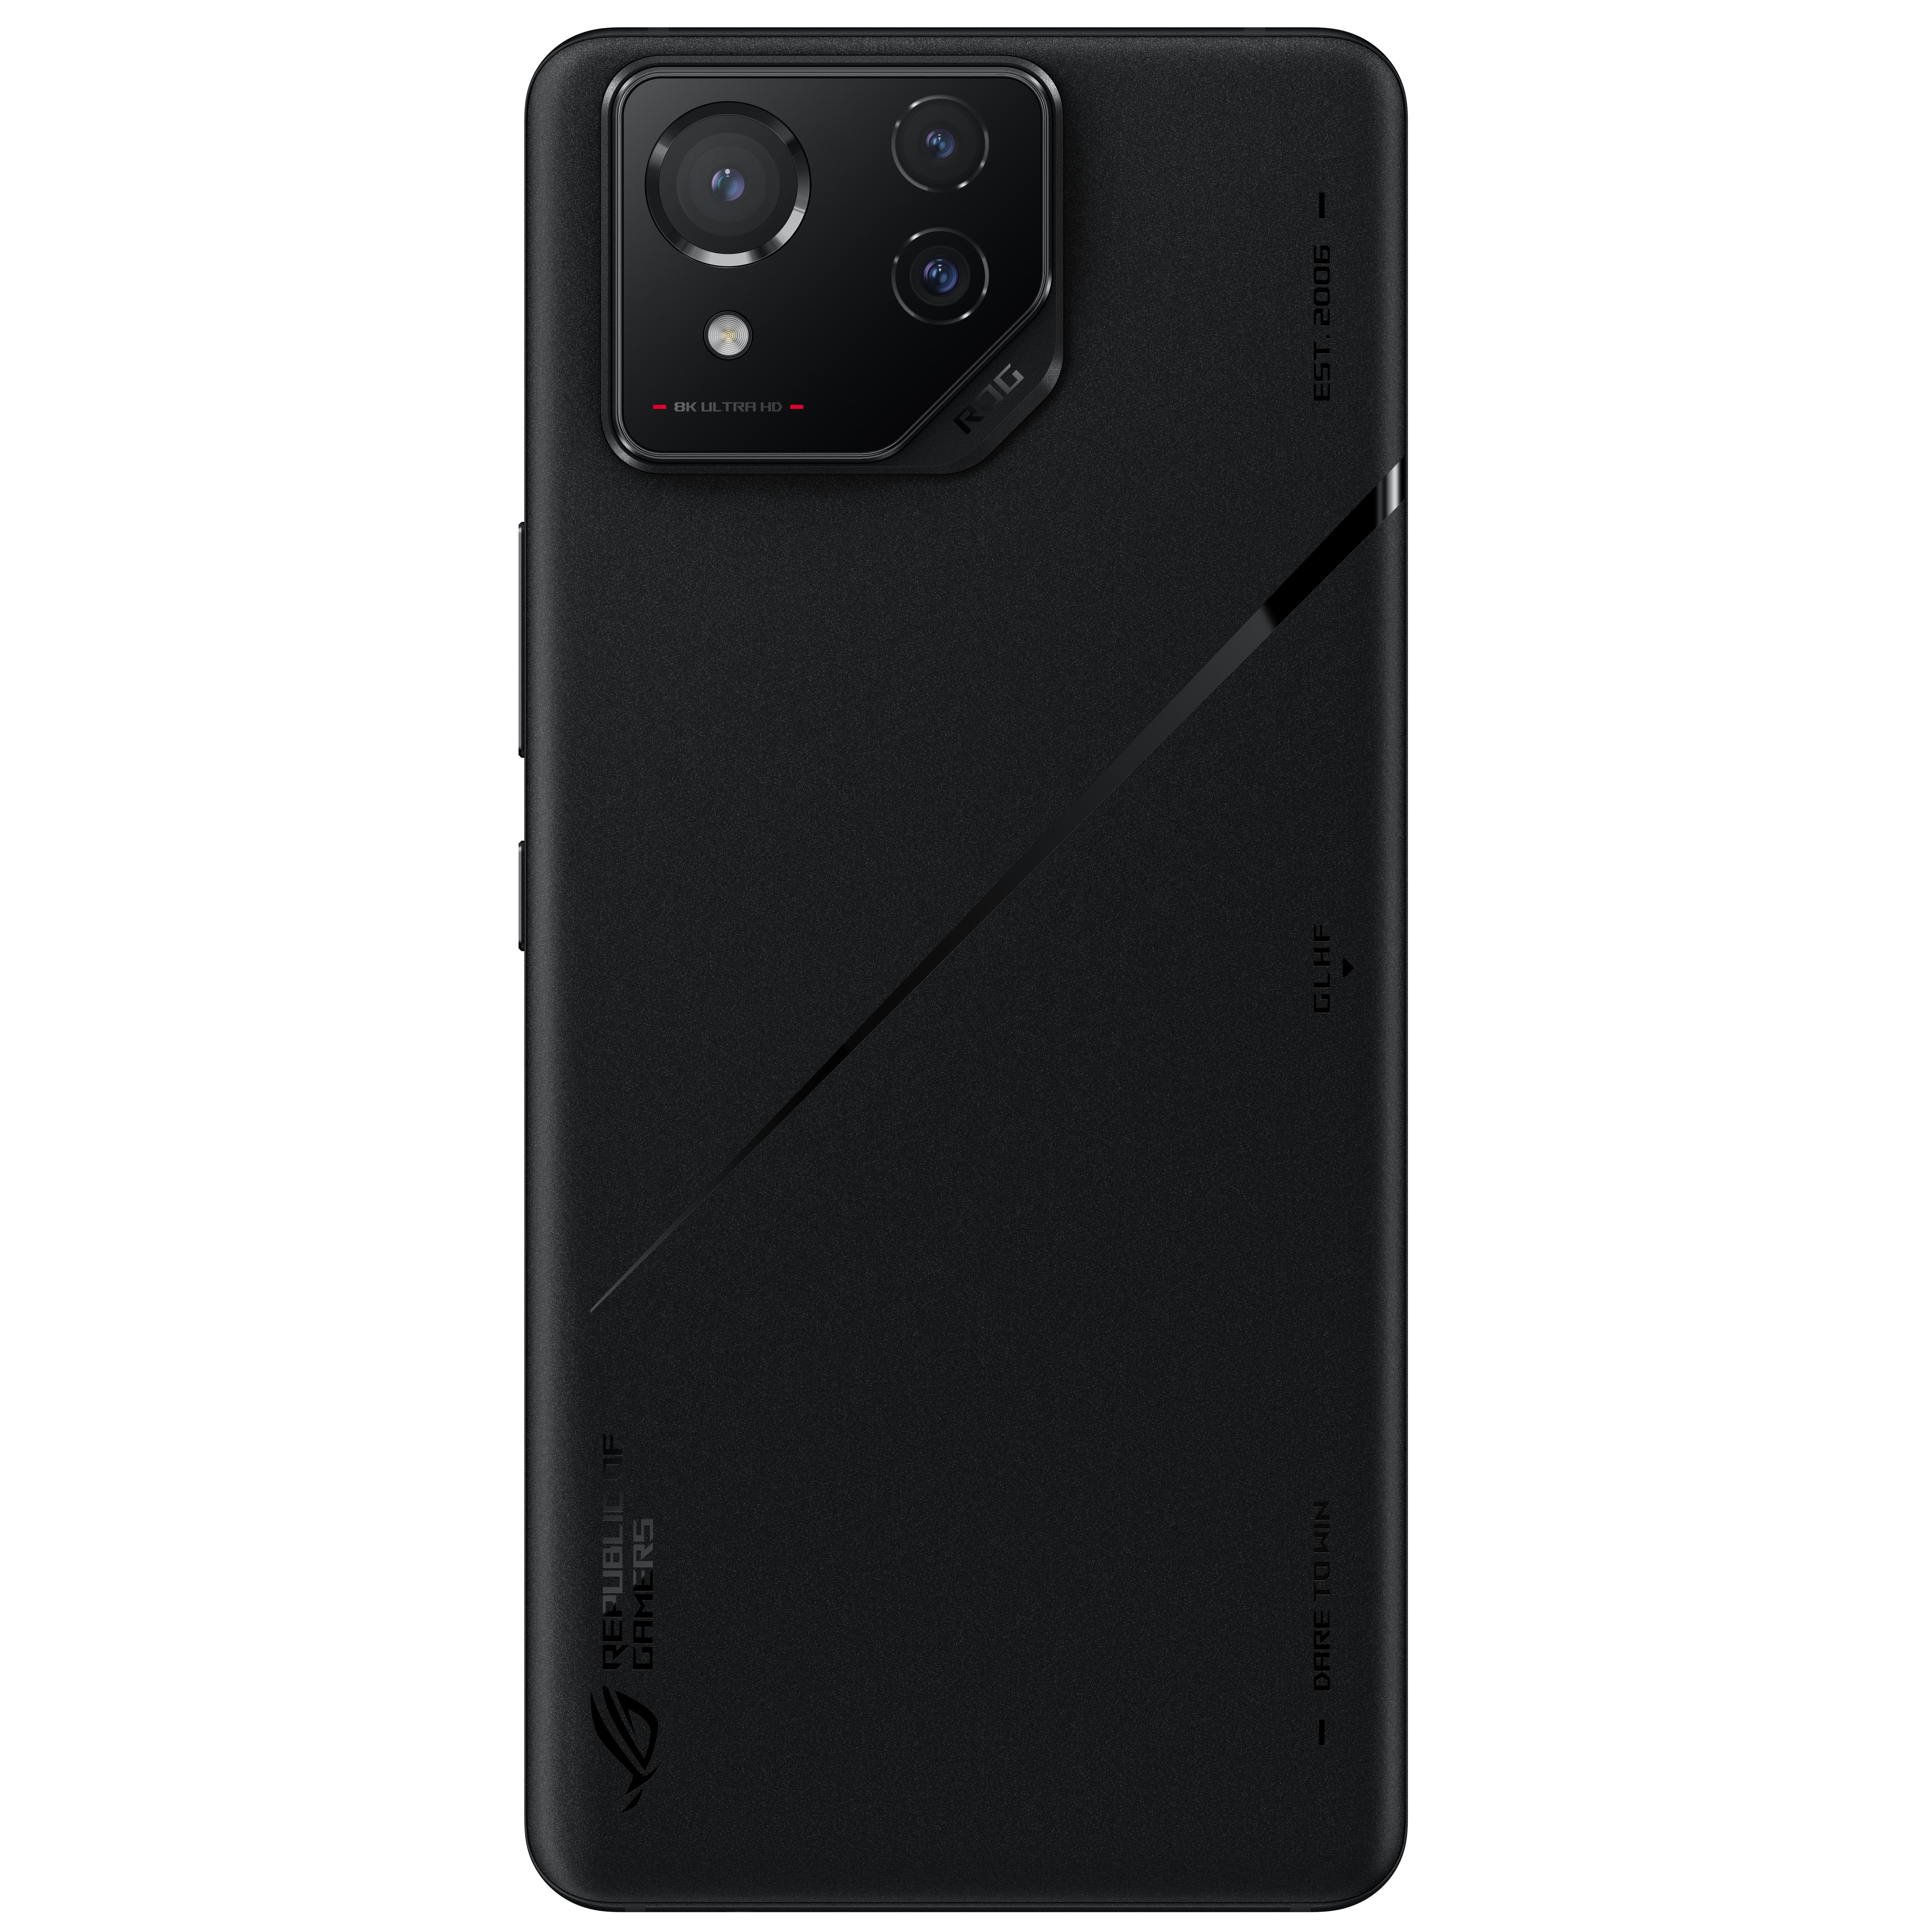 Placa traseira do ROG Phone 8 Pro mostrando colisão da câmera, com fundo branco